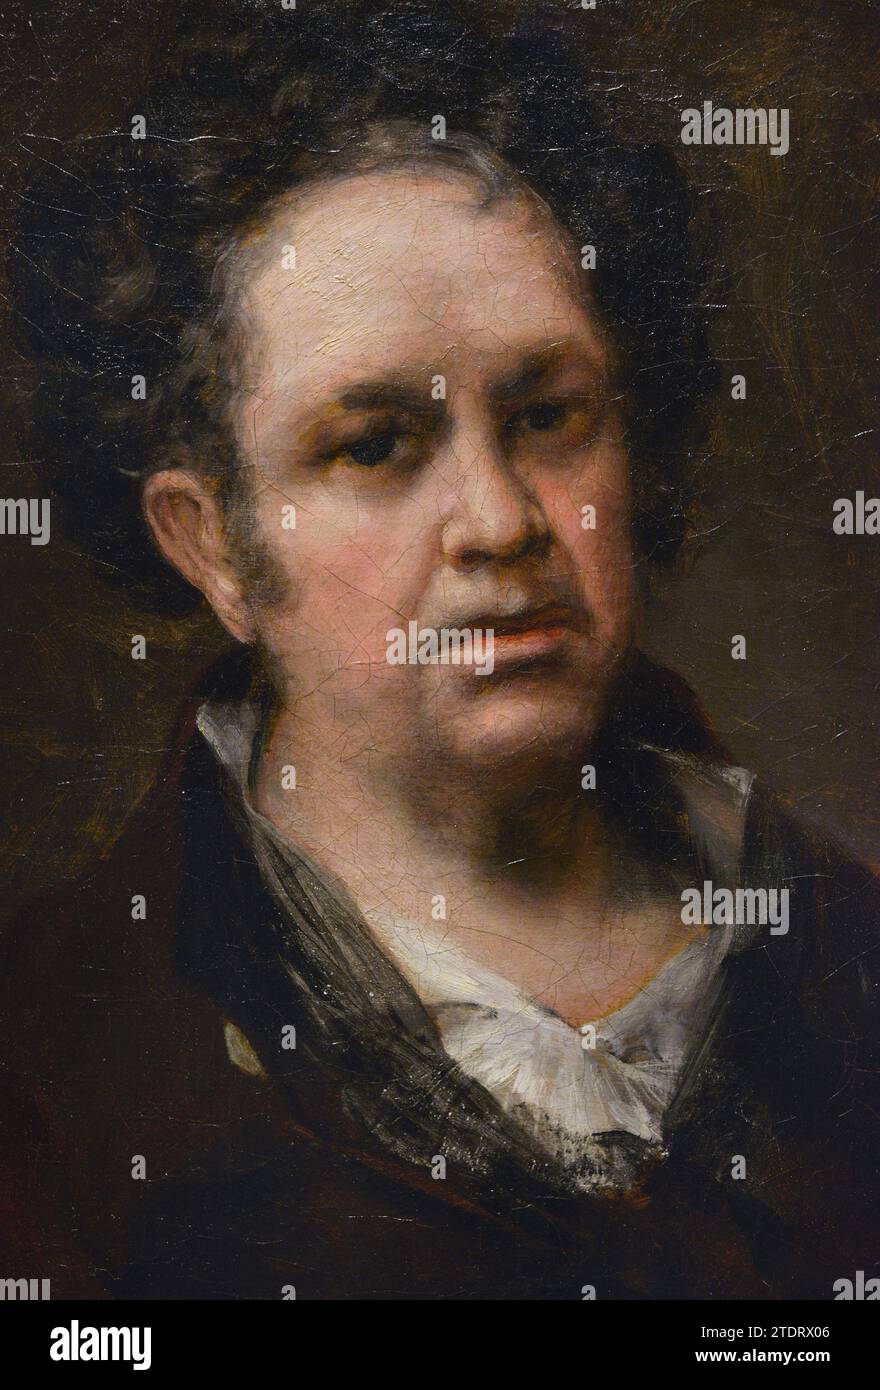 Francisco de Goya y Lucientes (1746-1828) Peintre espagnol. Autoportrait, 1815. Huile sur toile (45,8 x 35,6 cm. Détails. Musée du Prado. Madrid. Espagne. Banque D'Images